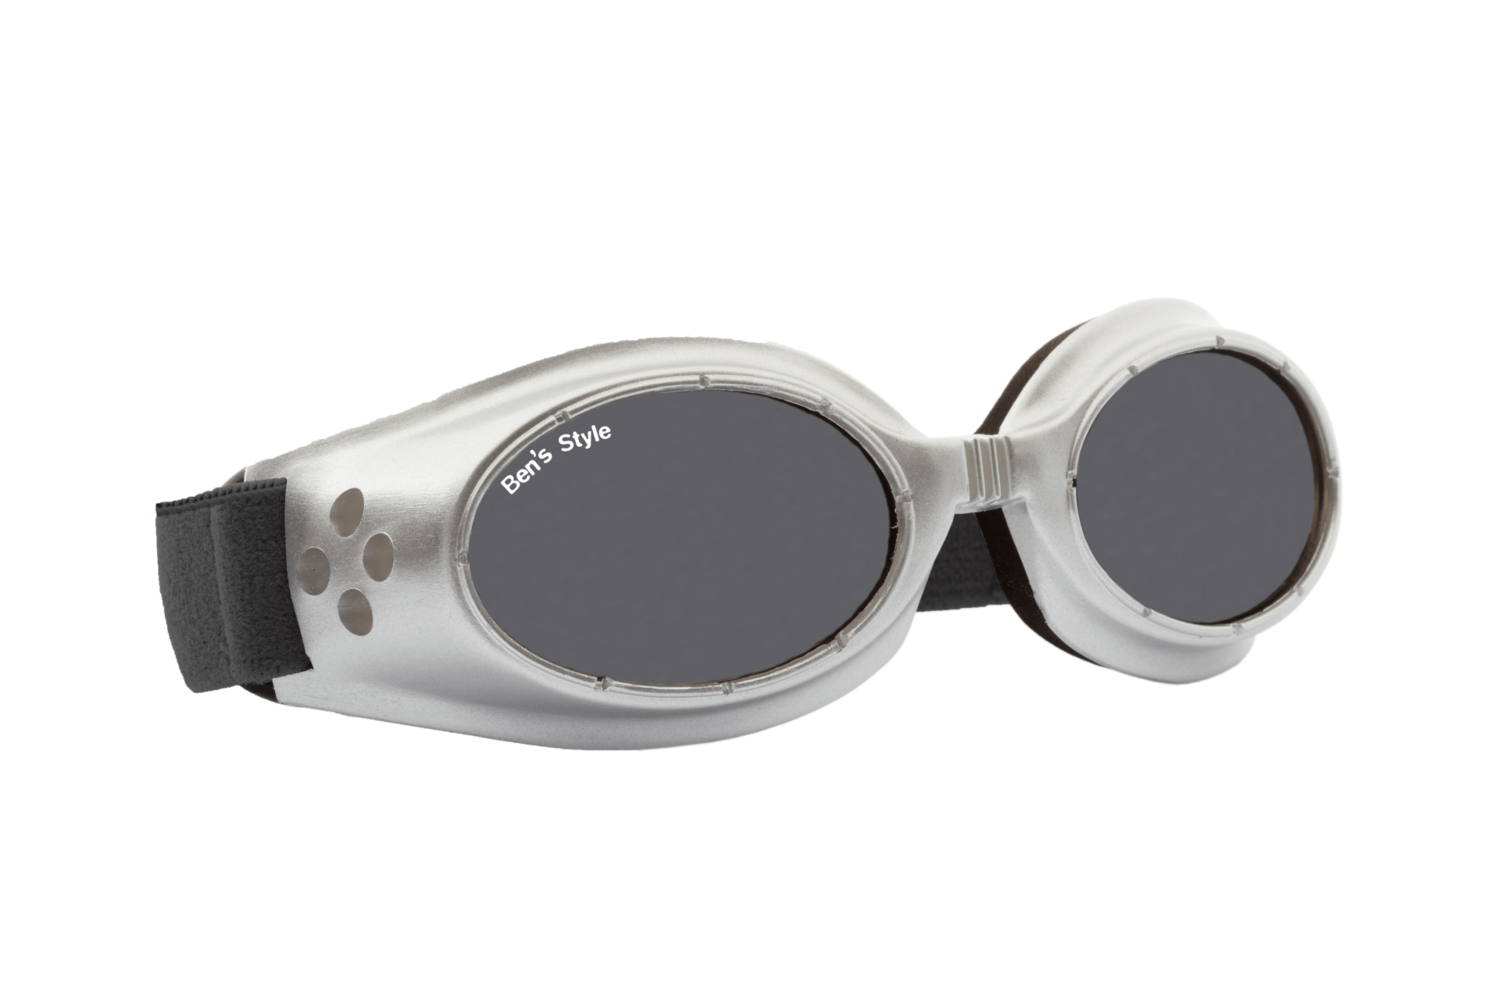 Hot I S -
Hundeschutzbrille Größe S
- Fassung: Chrom , Gläser: Grau
Größe/Gesamtgewicht: Länge: 13,5 cm, Breite: 4 cm / 40 g